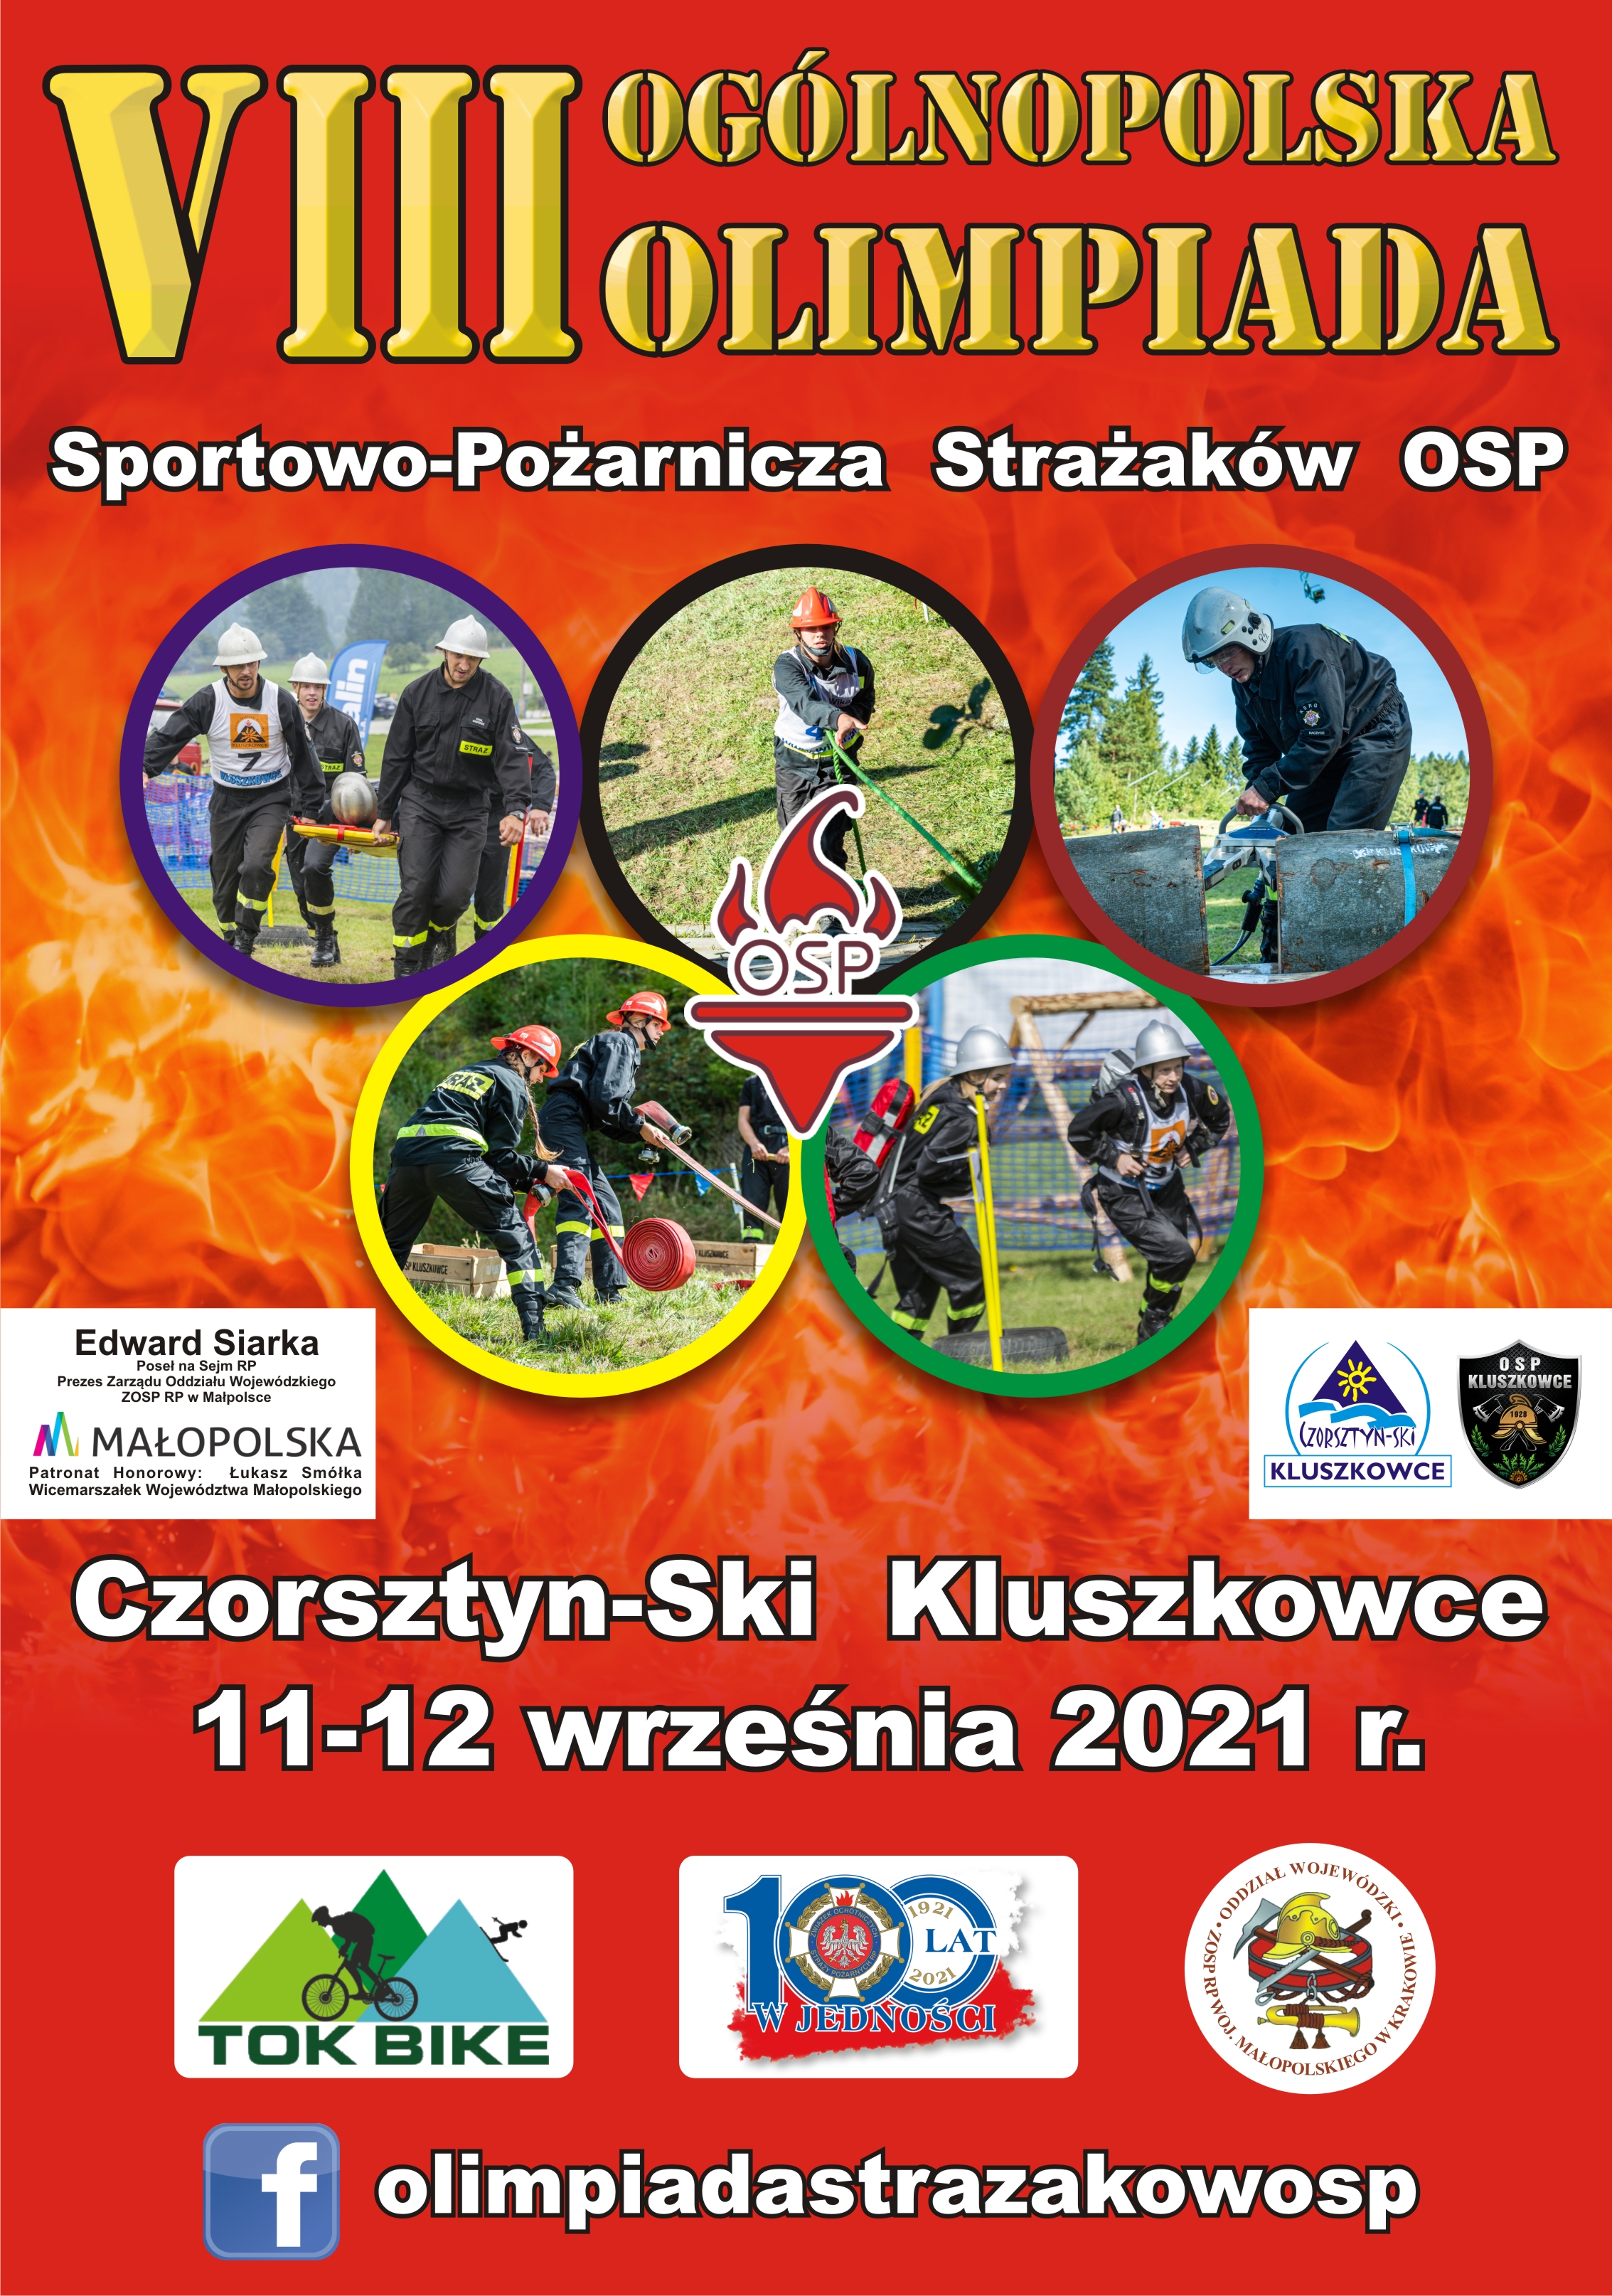  VIII Ogólnopolska Olimpiada Sportowo-Pożarnicza Strażaków OSP